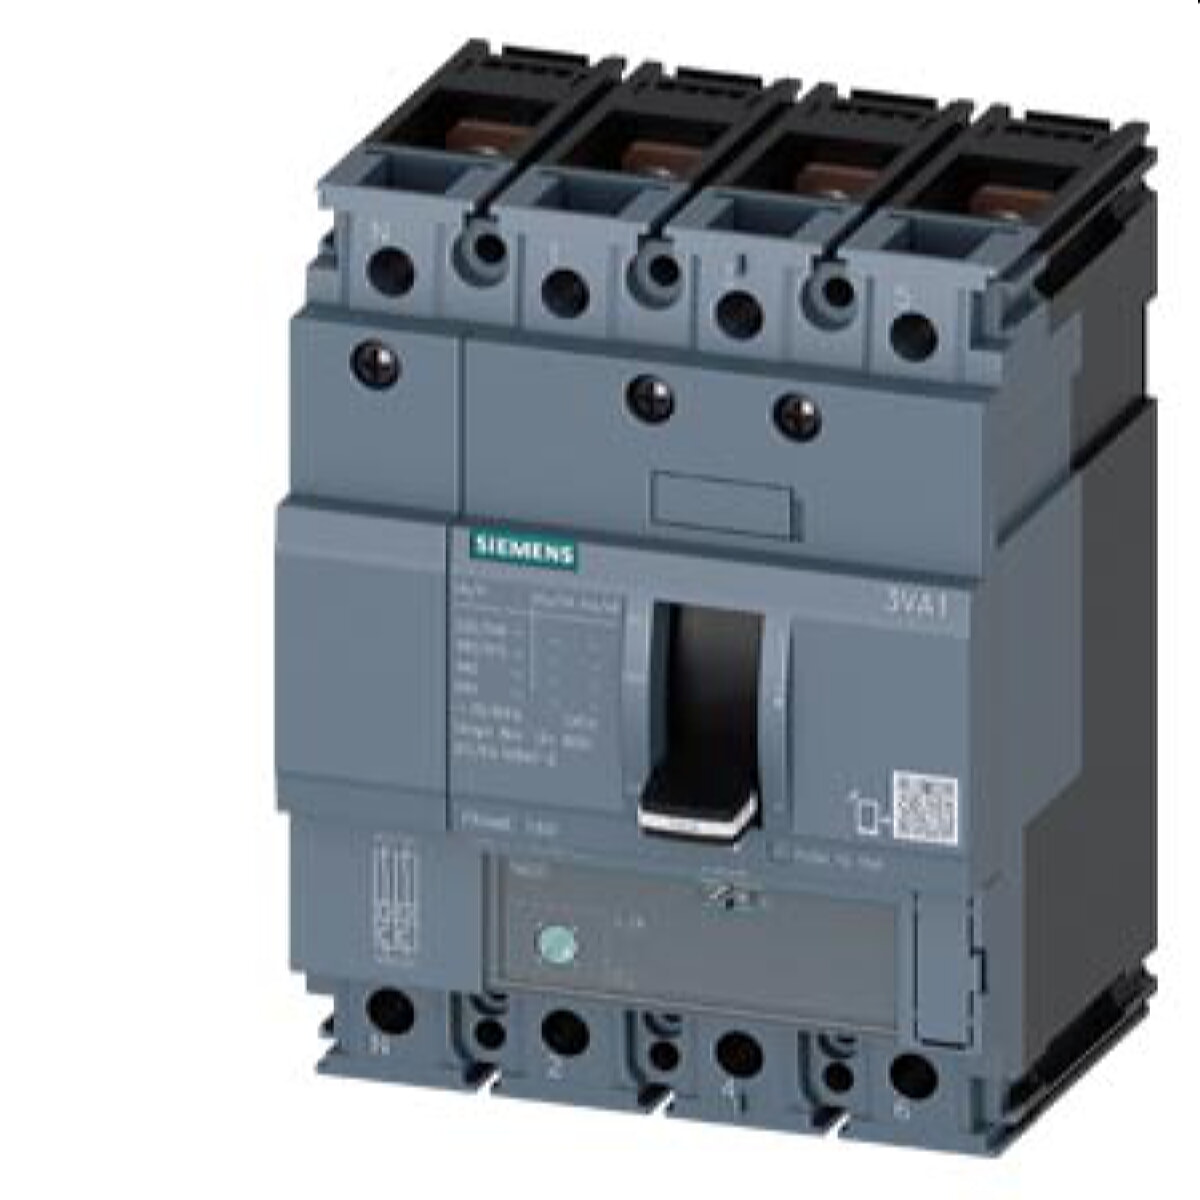 Siemens Leistungsschalter 3VA1 25kA ATFM88-125A 3VA1112-3FE42-0AA0